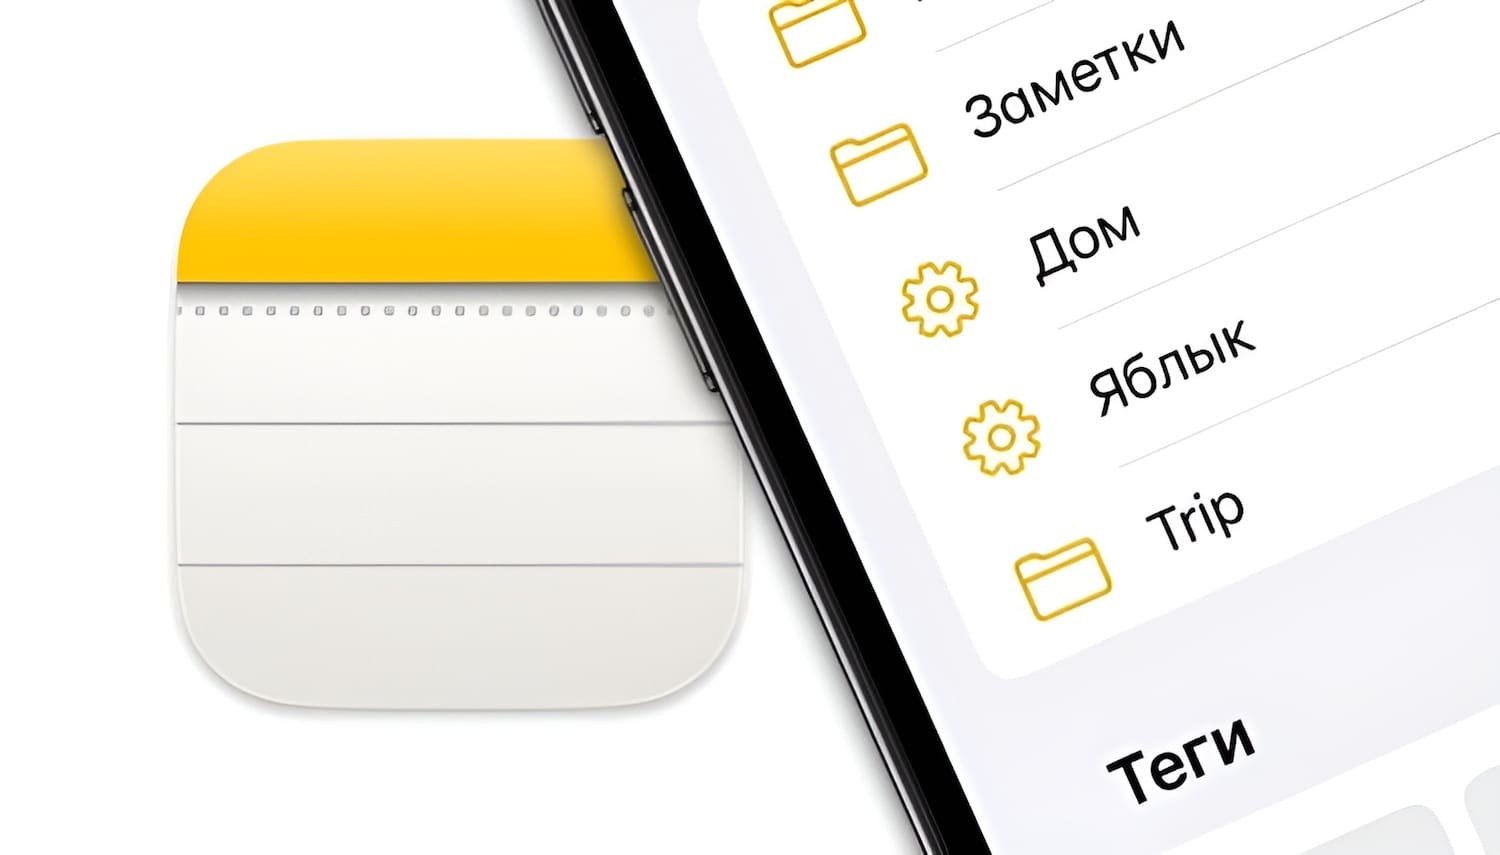 Смарт-папки в Заметках на iPhone и Mac: для чего нужны и как пользоваться?